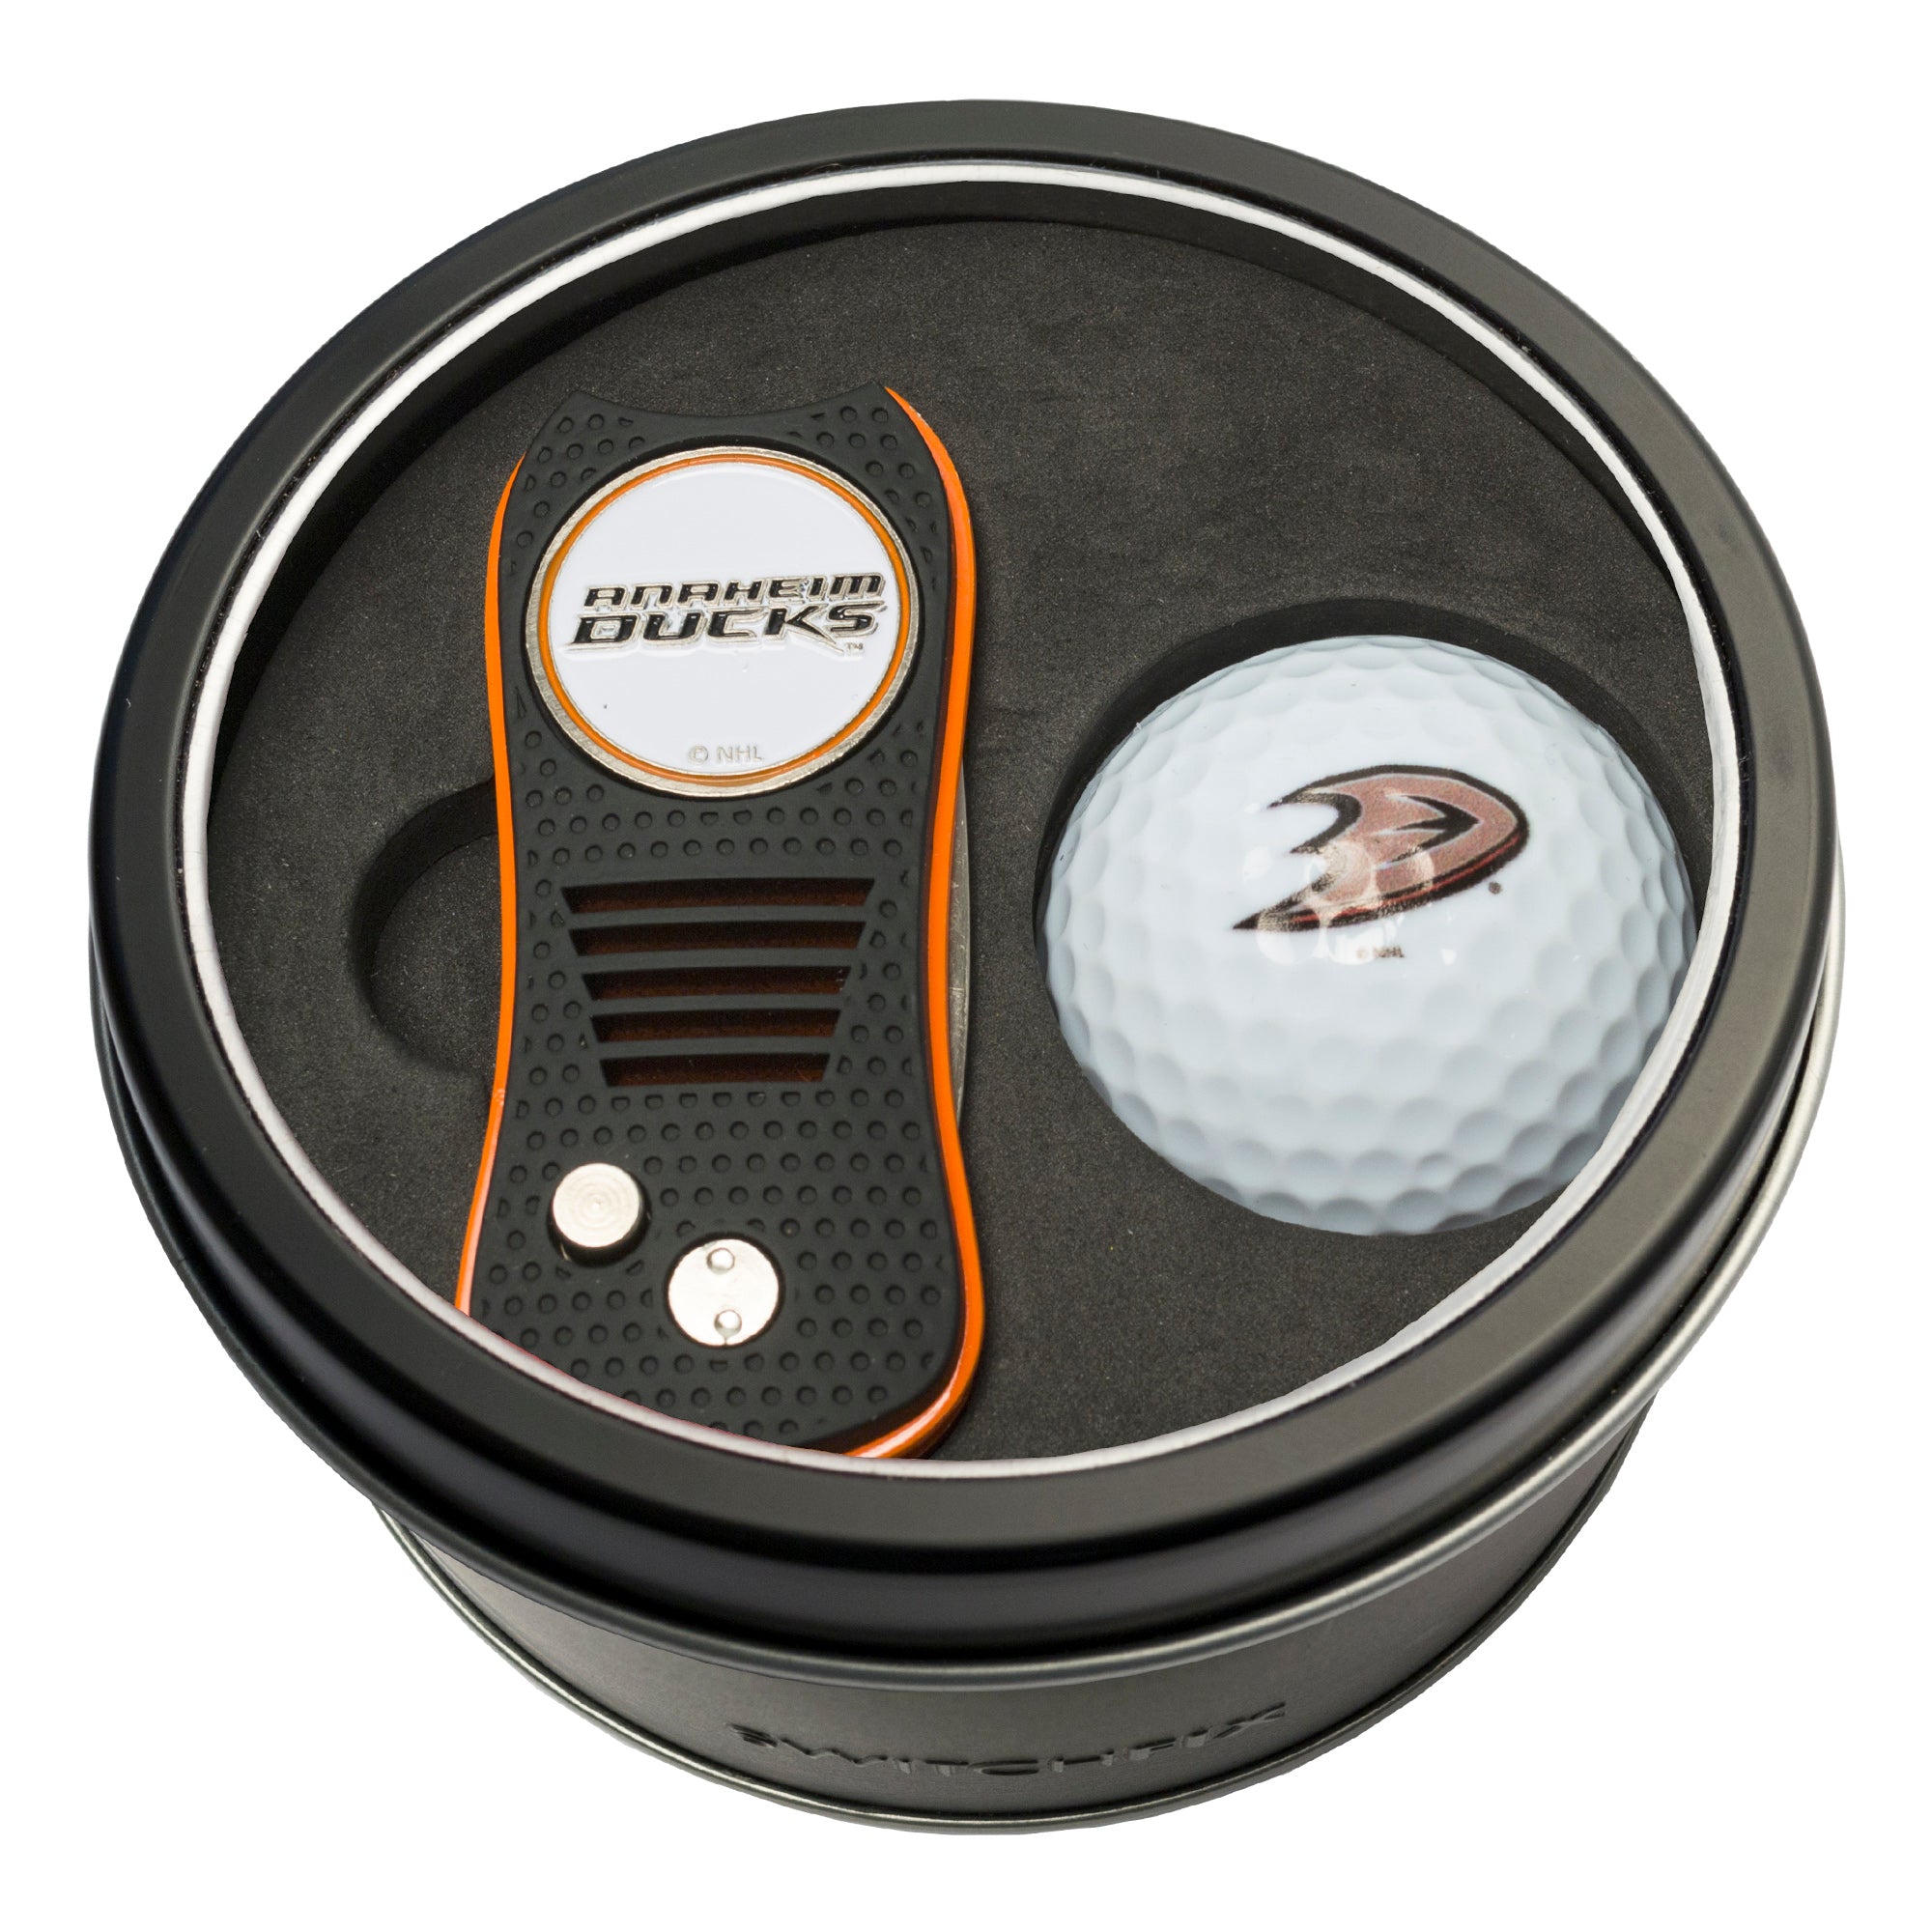 Anaheim Ducks Switchblade Divot Tool + Golf Ball Tin Gift Set